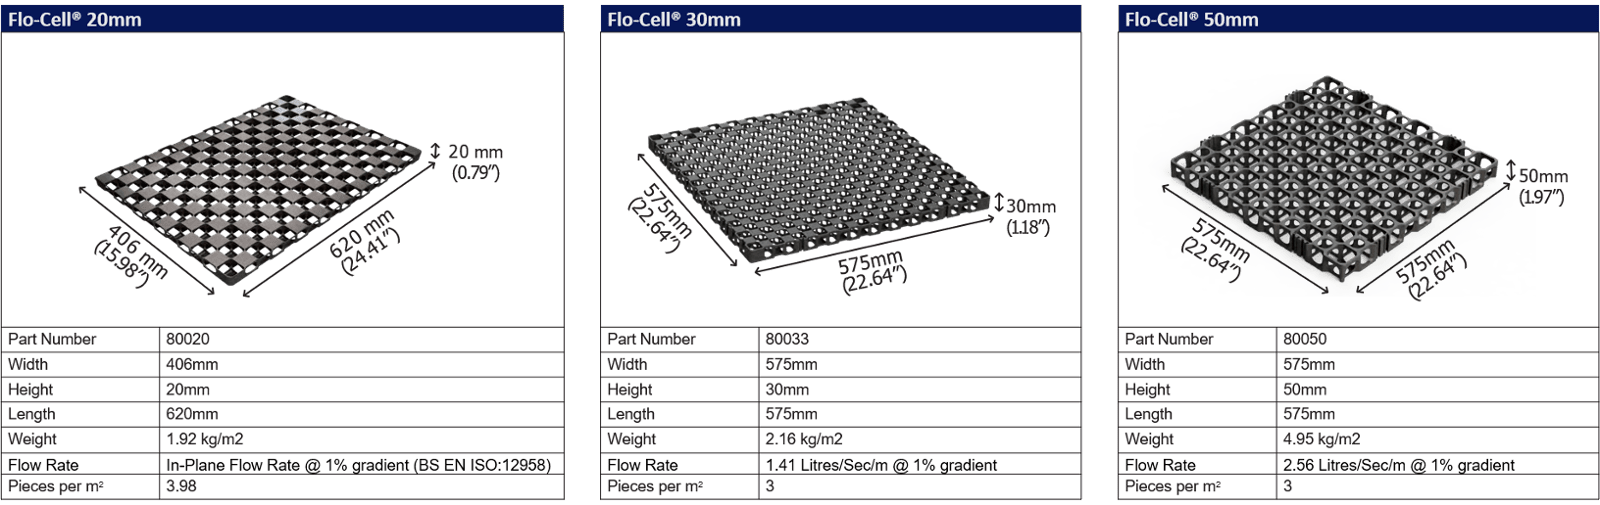 Flo Cell Sizes